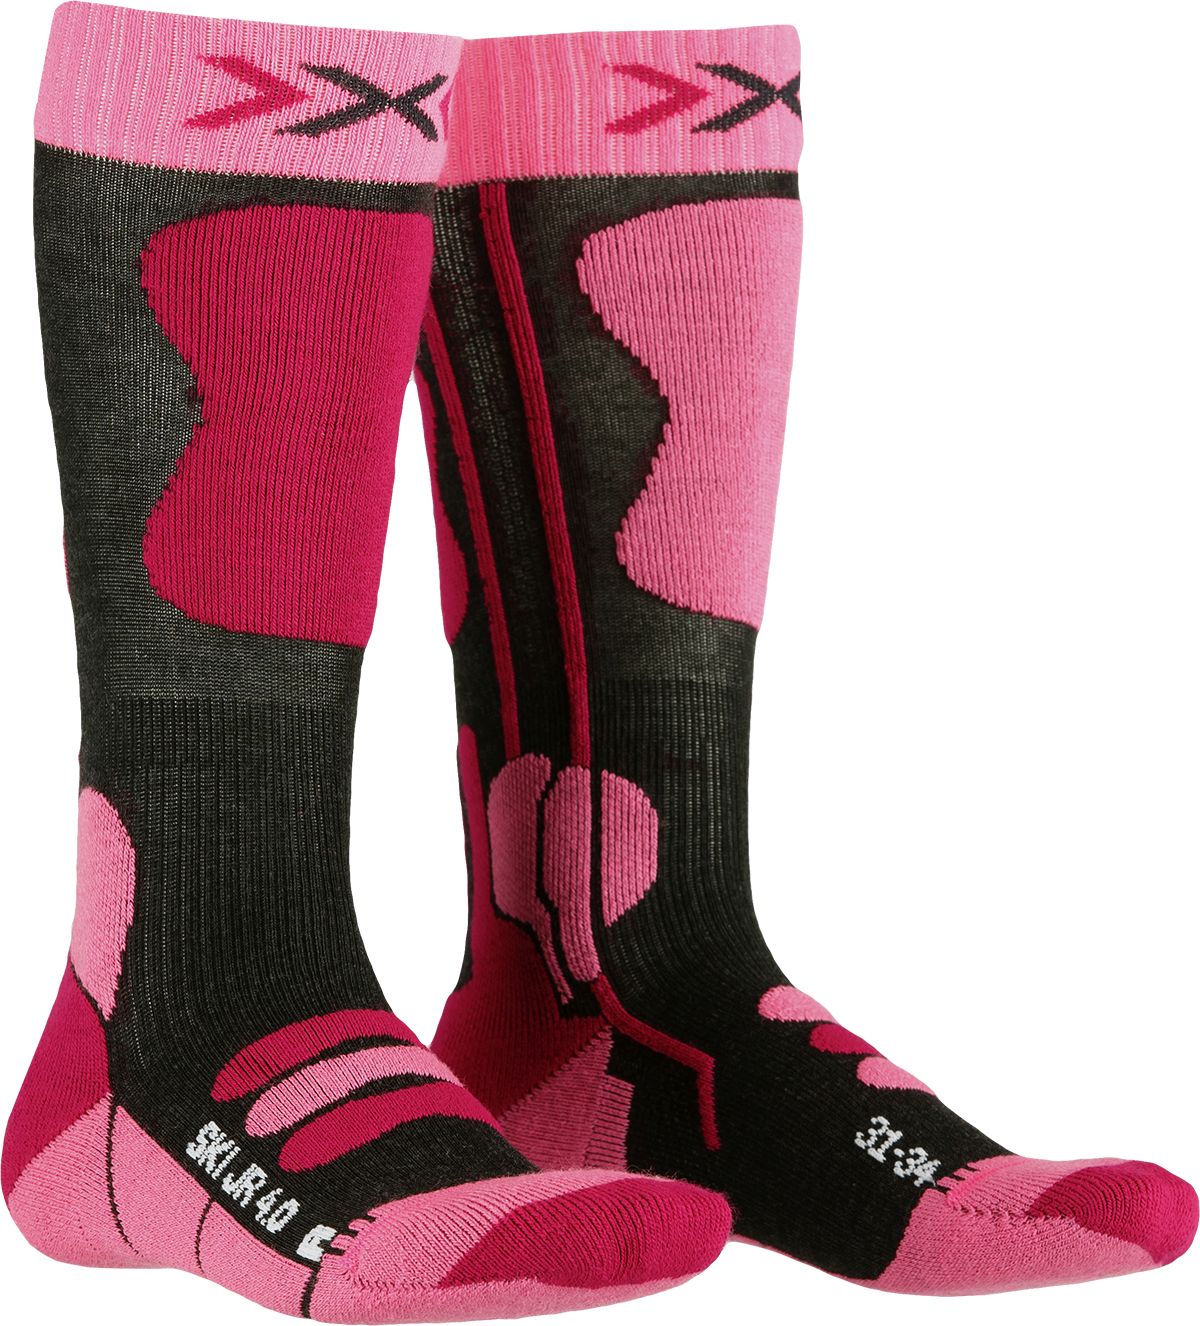 X-Socks Ski Junior 4.0 - anthracite melange/fluo pink 27-30